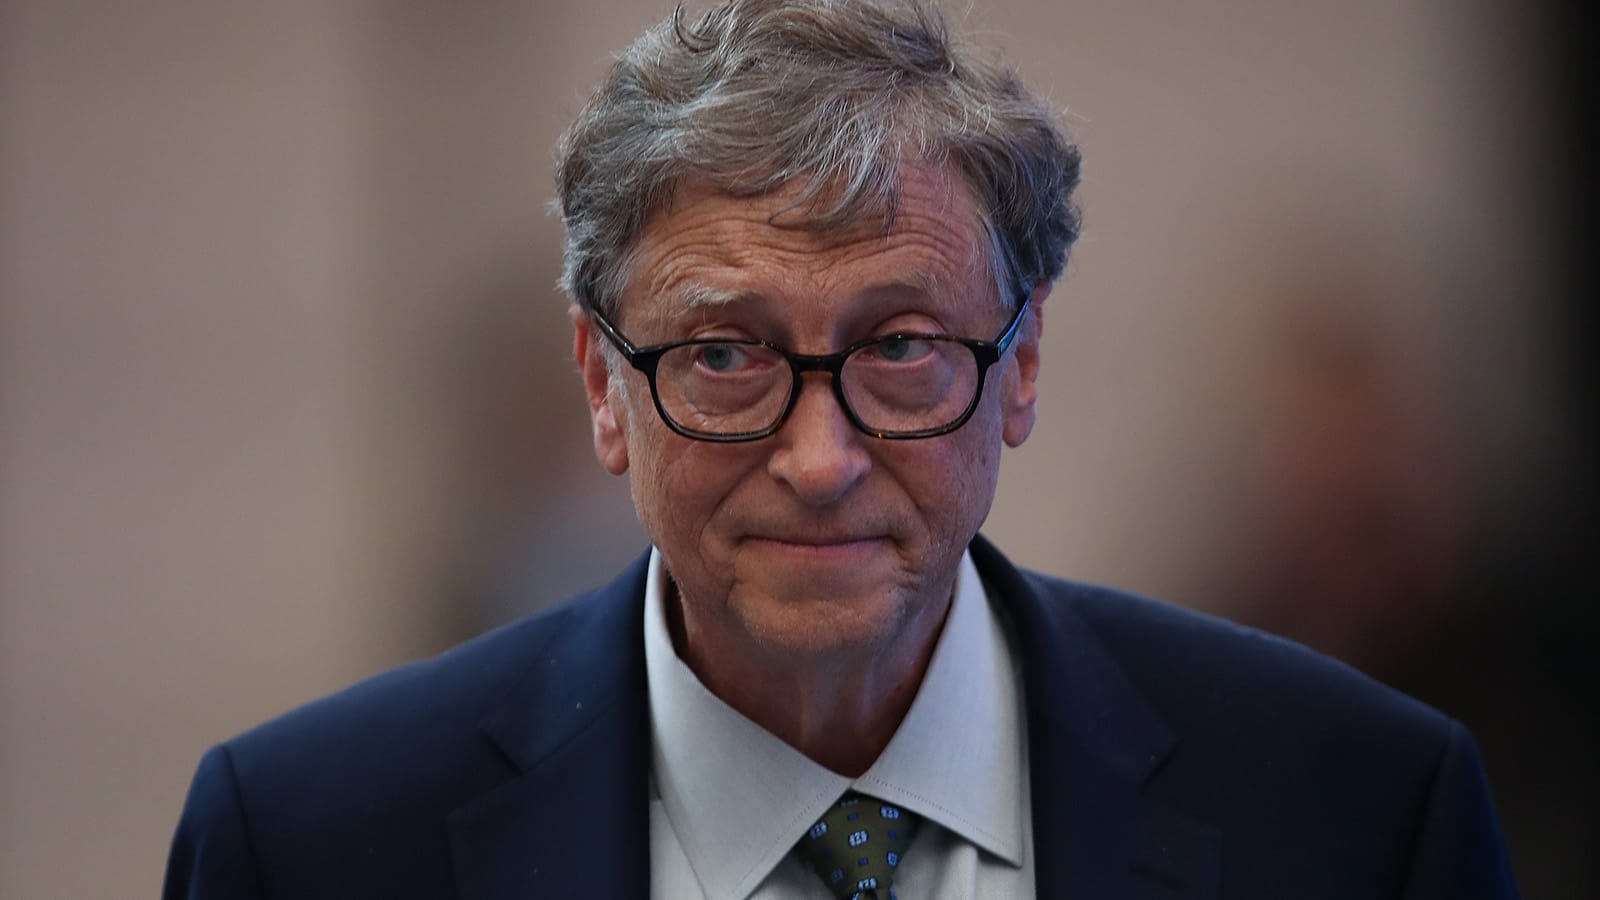 Билл Гейтс считает, что у людей есть возможность перехода на трёхдневную рабочую неделю